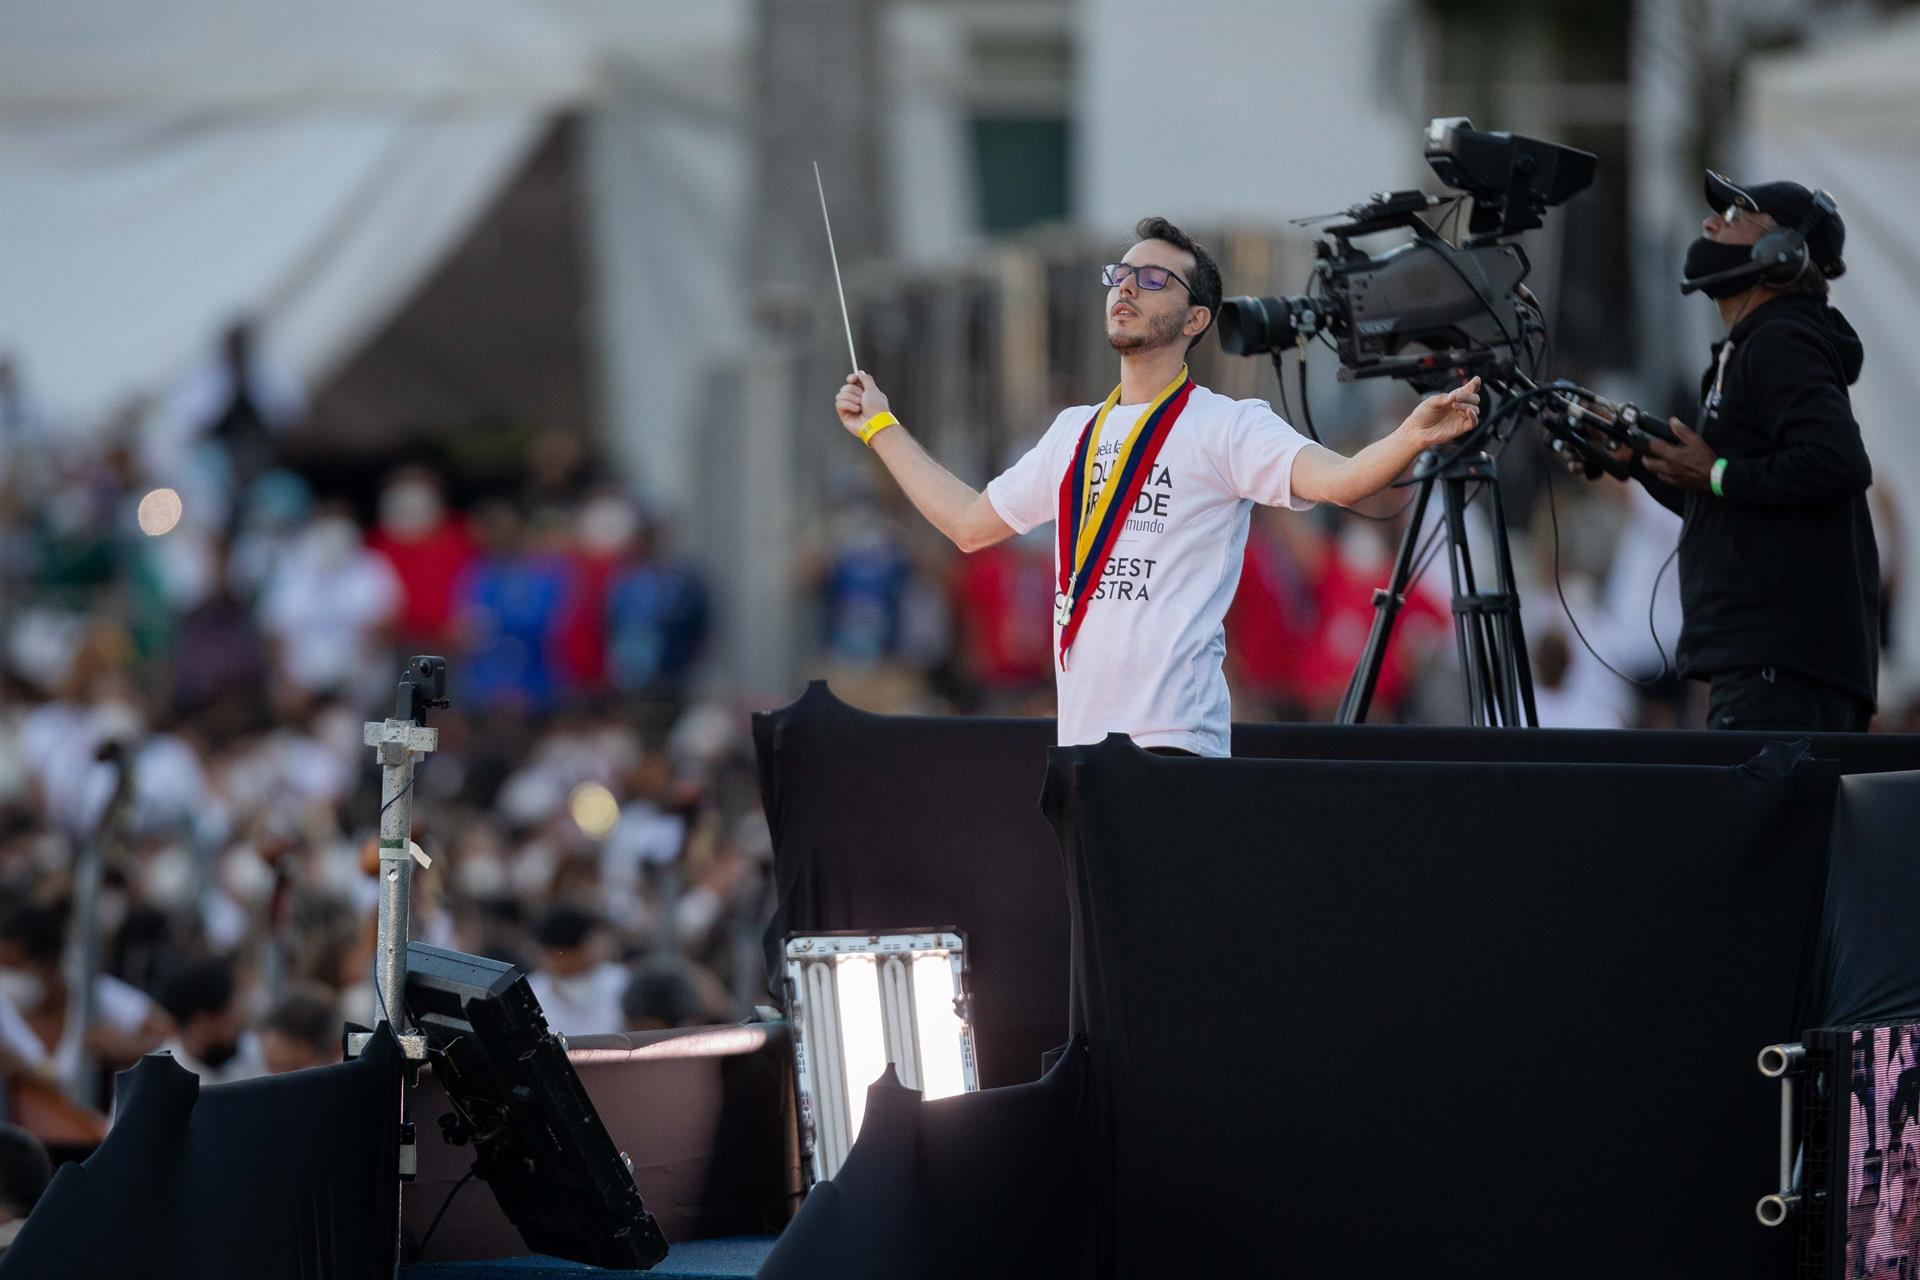 Venezuela: 12.000 músicos para intentar romper el récord de la orquesta más grande del mundo (+fotos y video)